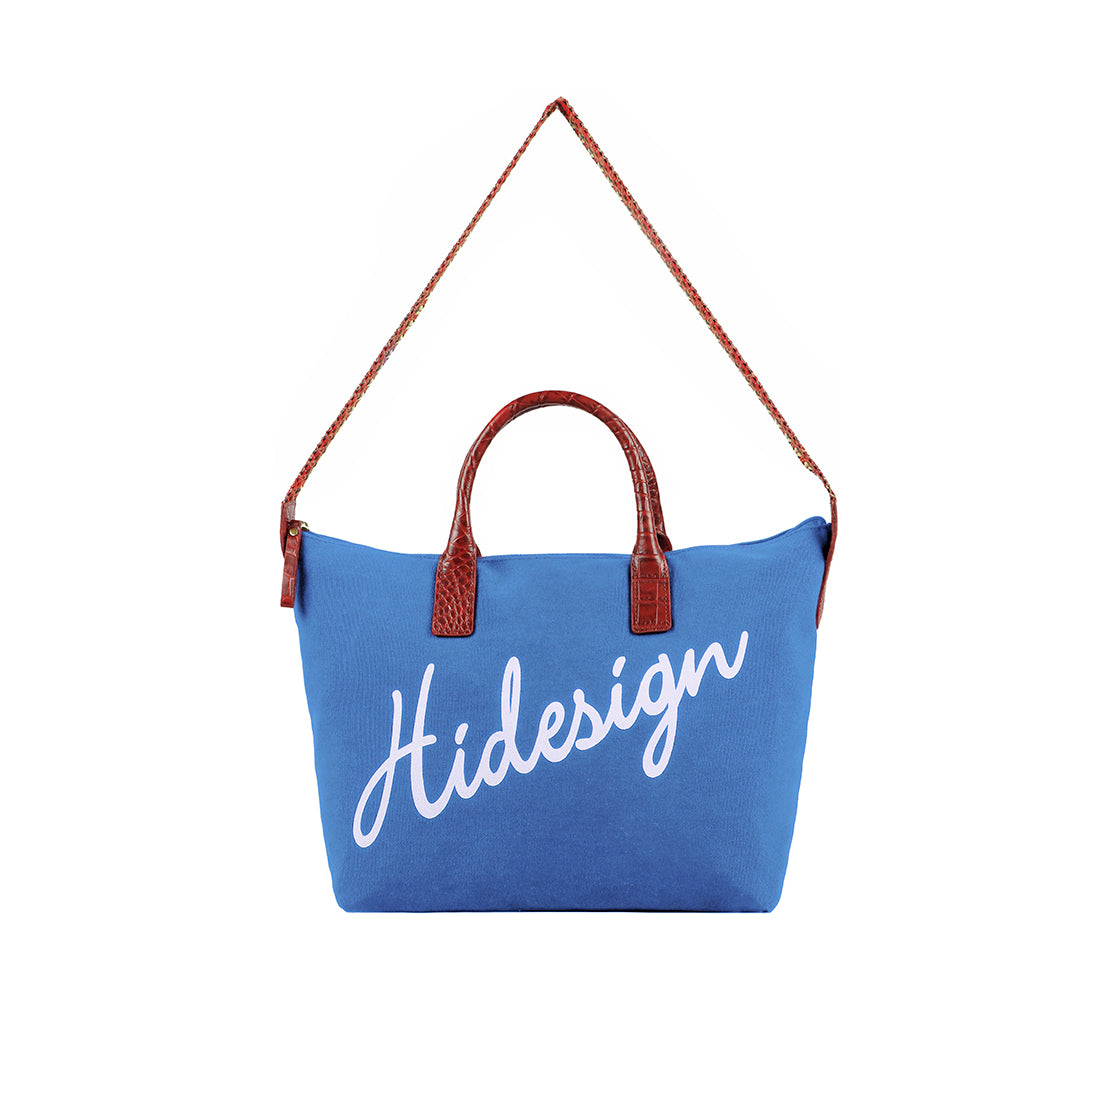 SKYNKE shopping bag, gray-blue, 17 ¾x14 ¼